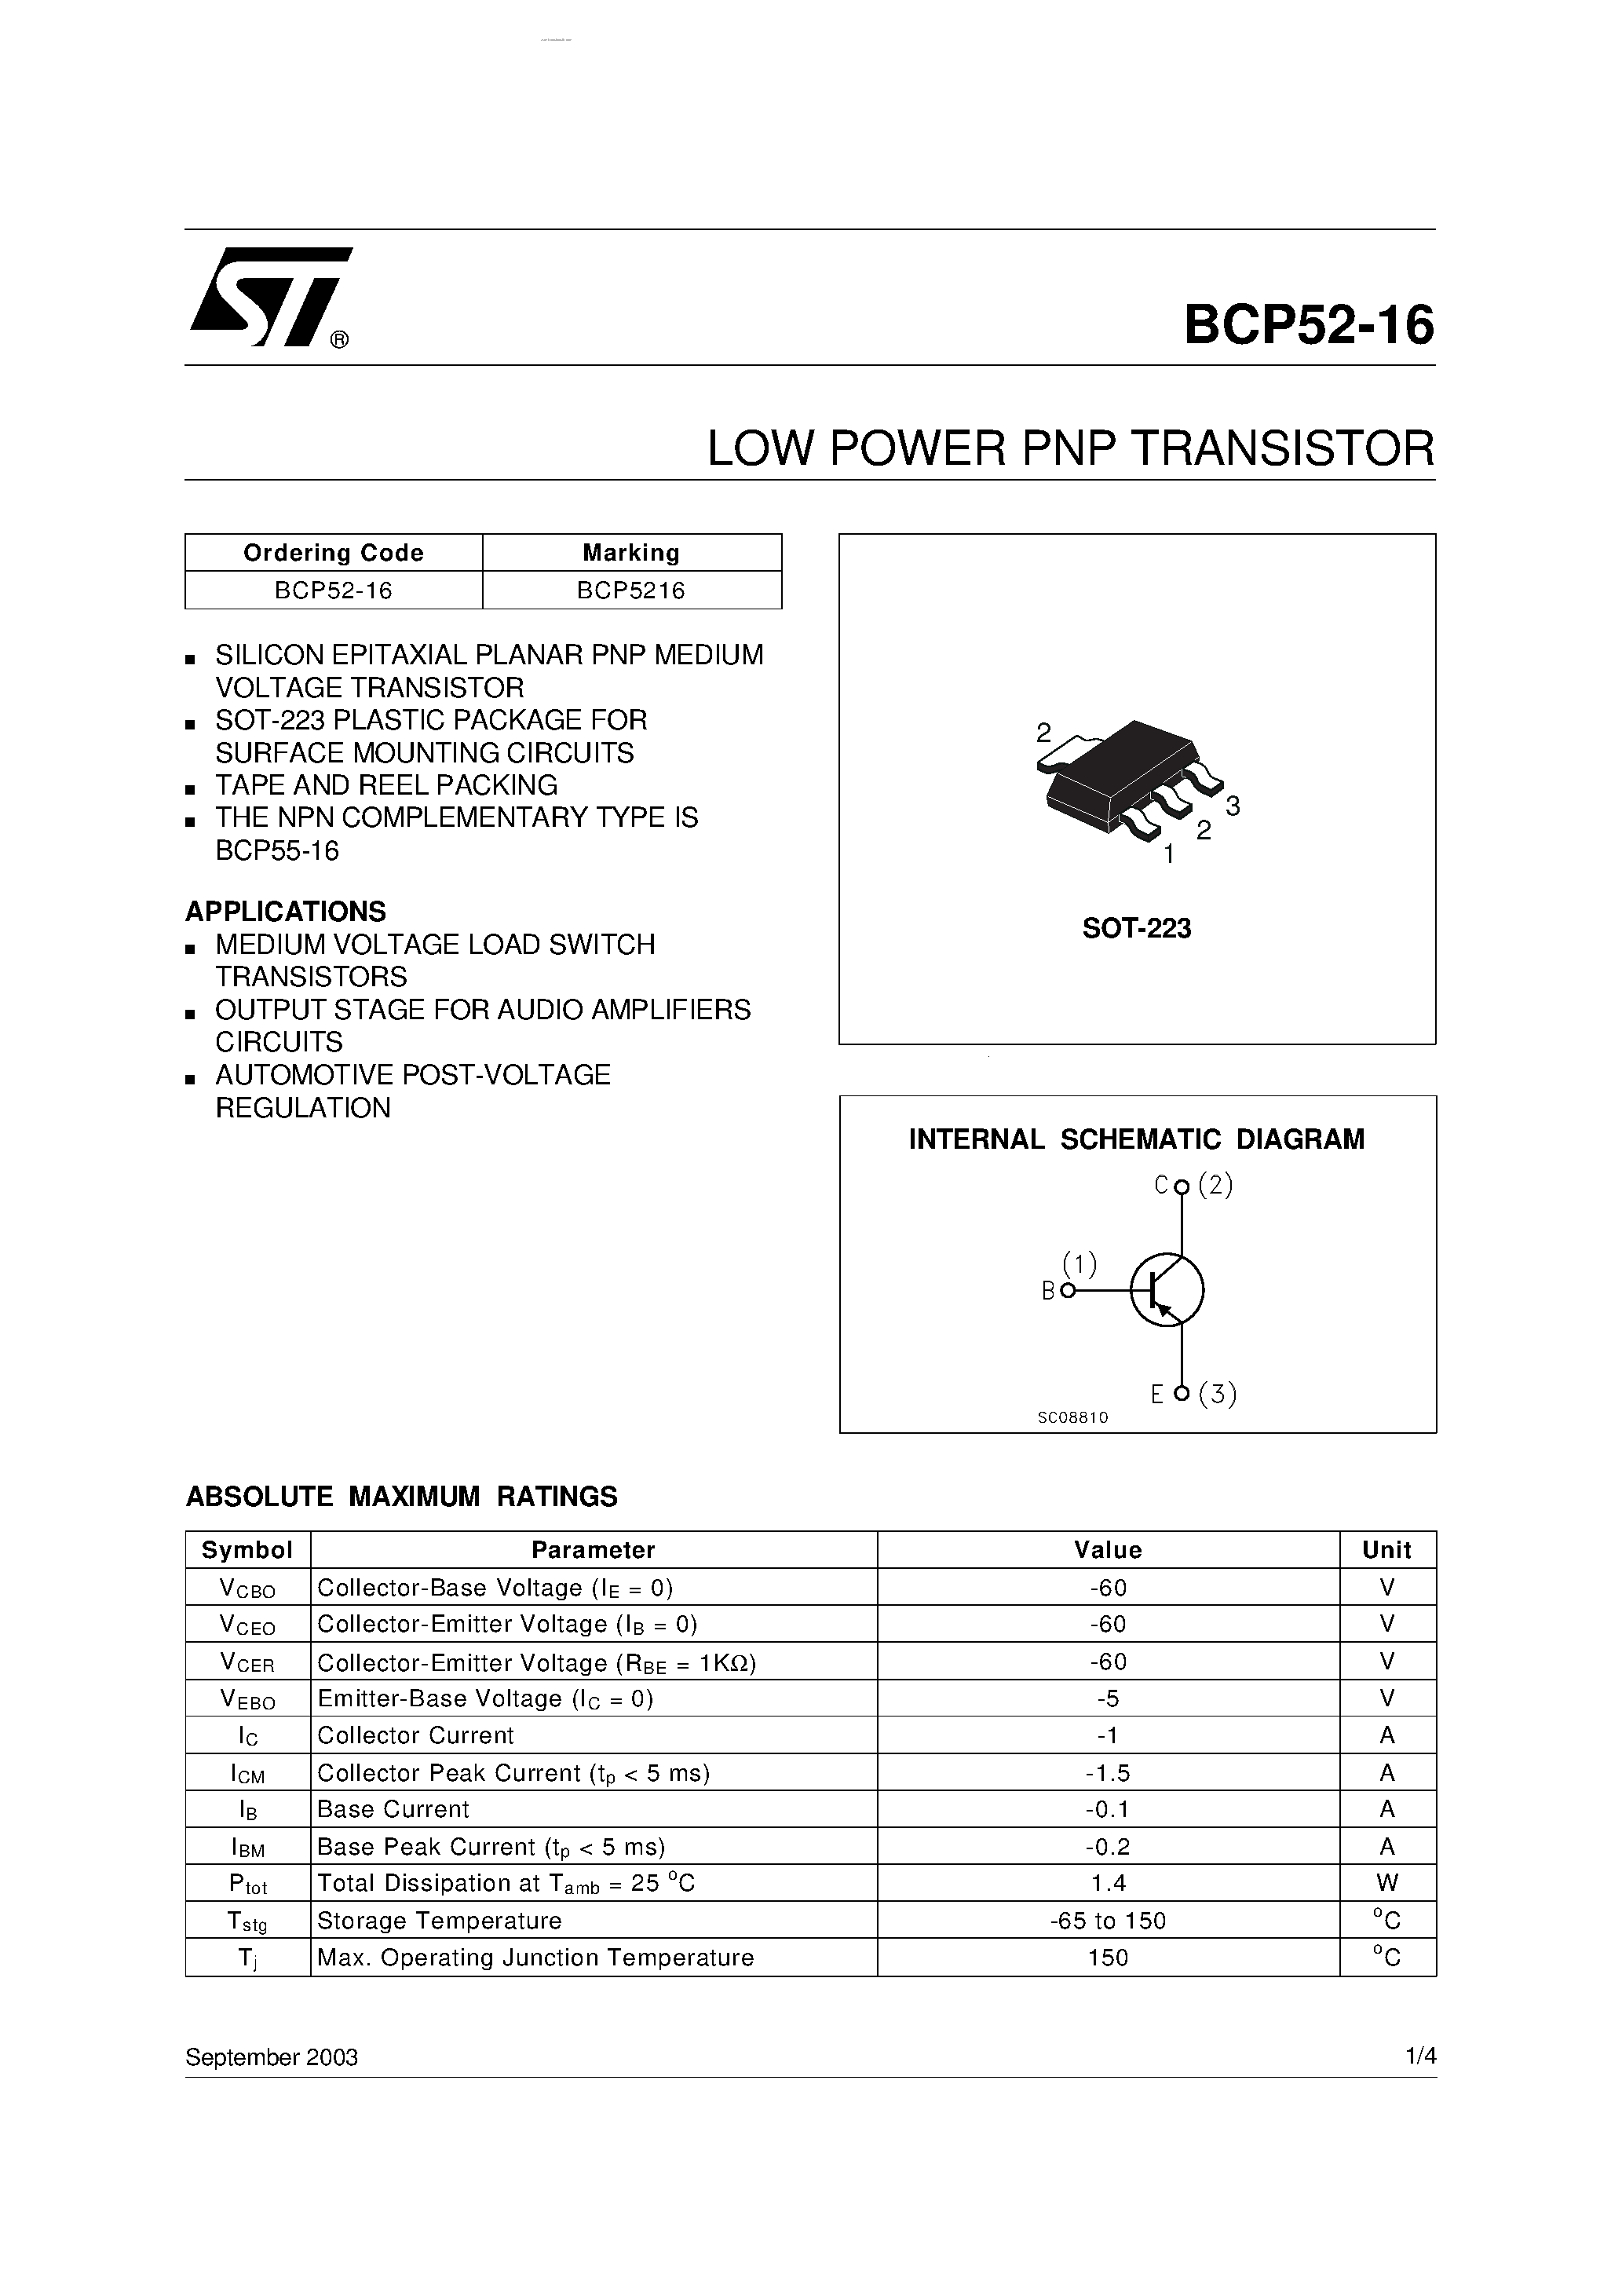 Datasheet BCP52-16 - LOW POWER PNP TRANSISTOR page 1